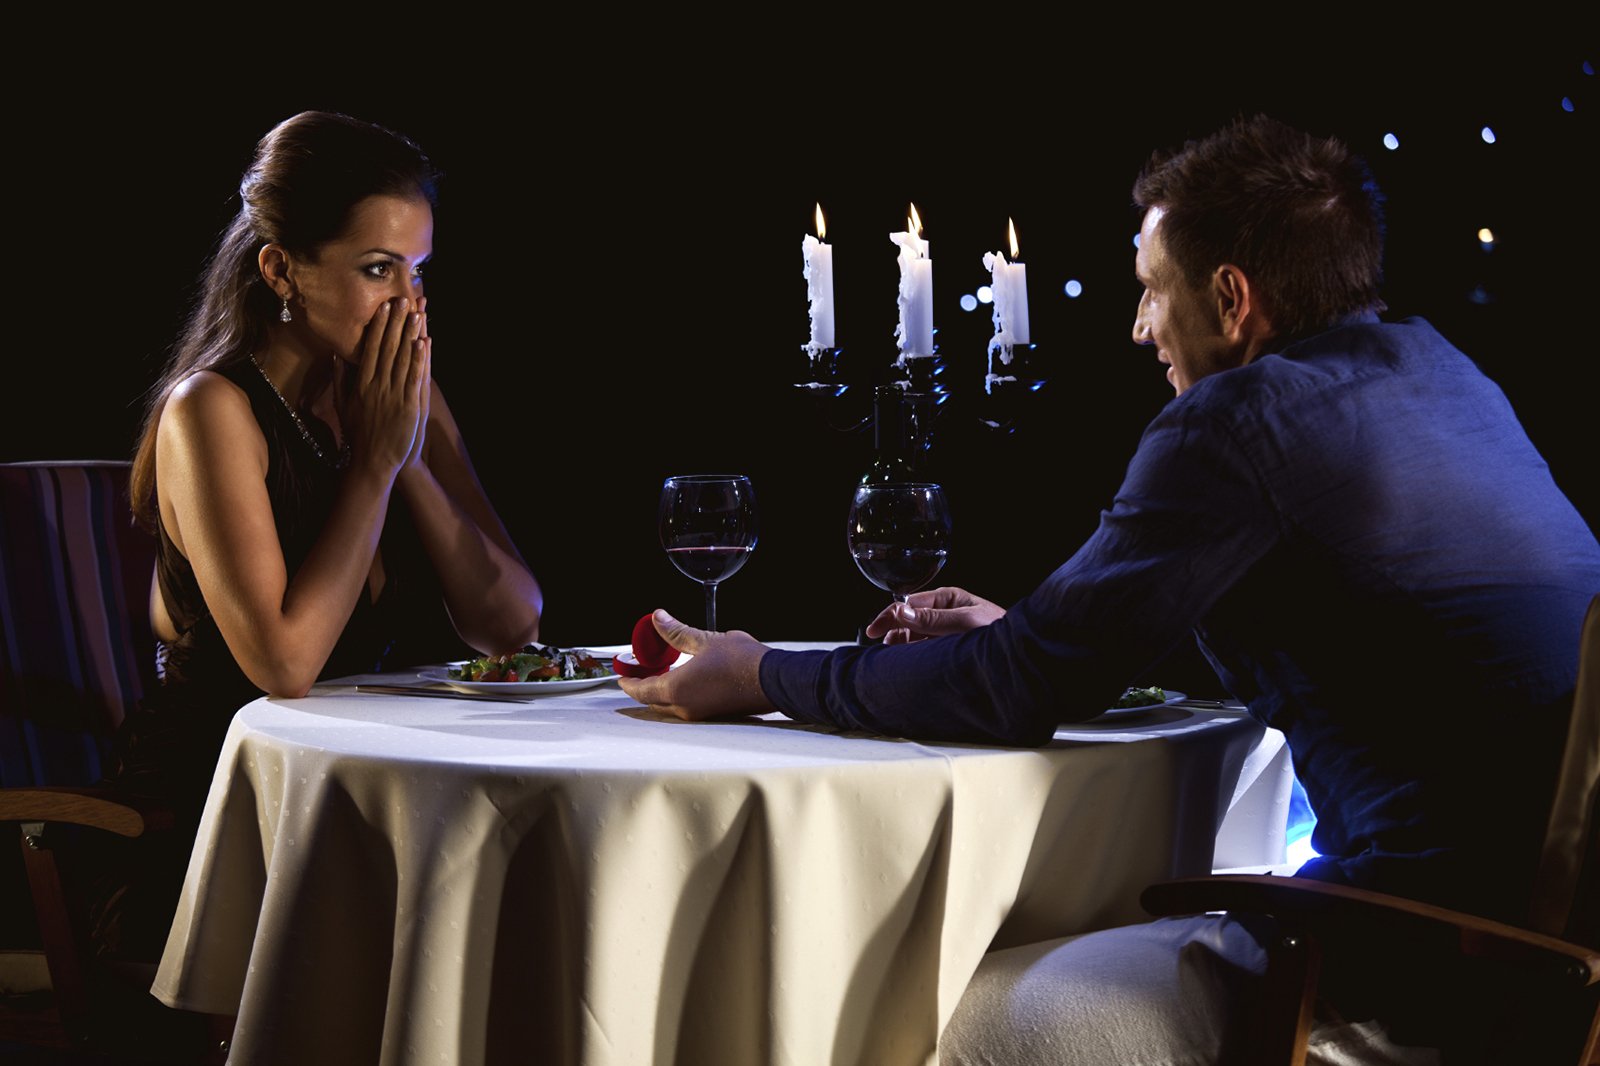 Незабываемое желание. Пара в кафе за столиком. Мужчина с девушкой в ресторане. Мужчина за столом в ресторане. Романтический ужин при свечах.